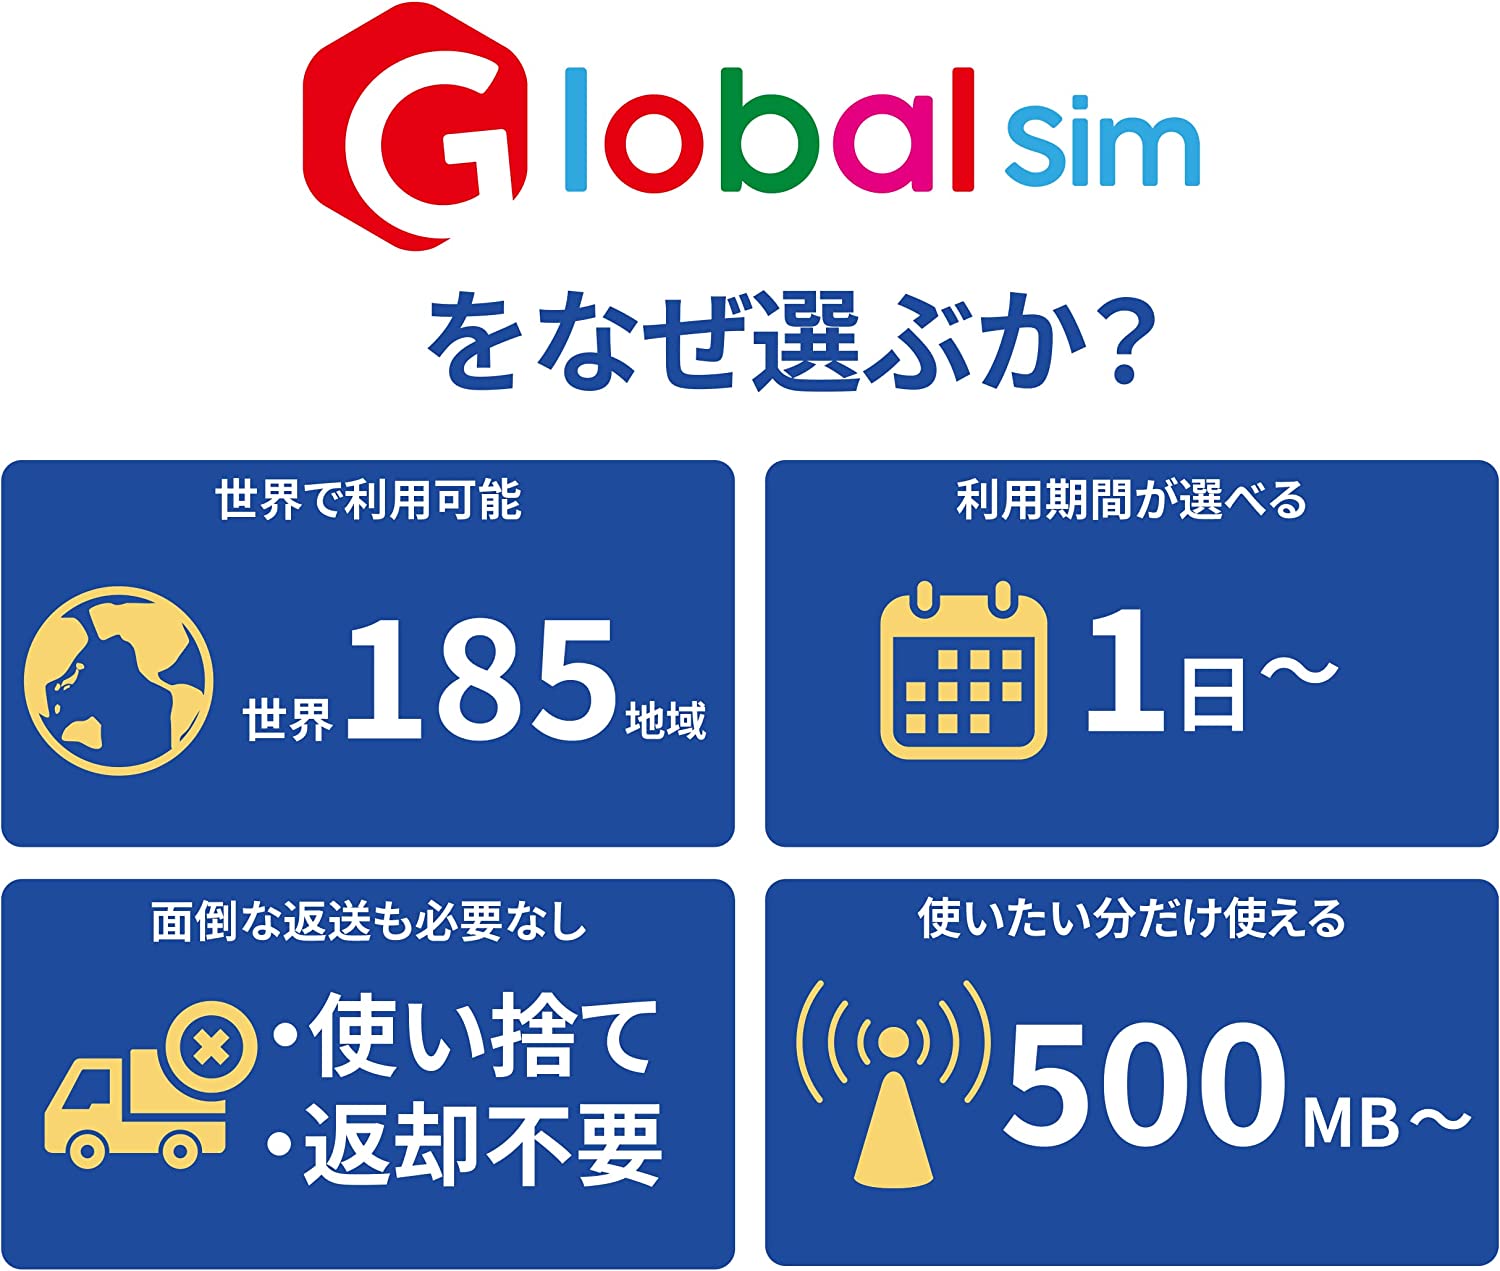 GLOBAL SIM シンガポール 15日間 7GBデータプラン データ通信専用 シムフリー 端末のみ対応 追加費用なし・契約不要